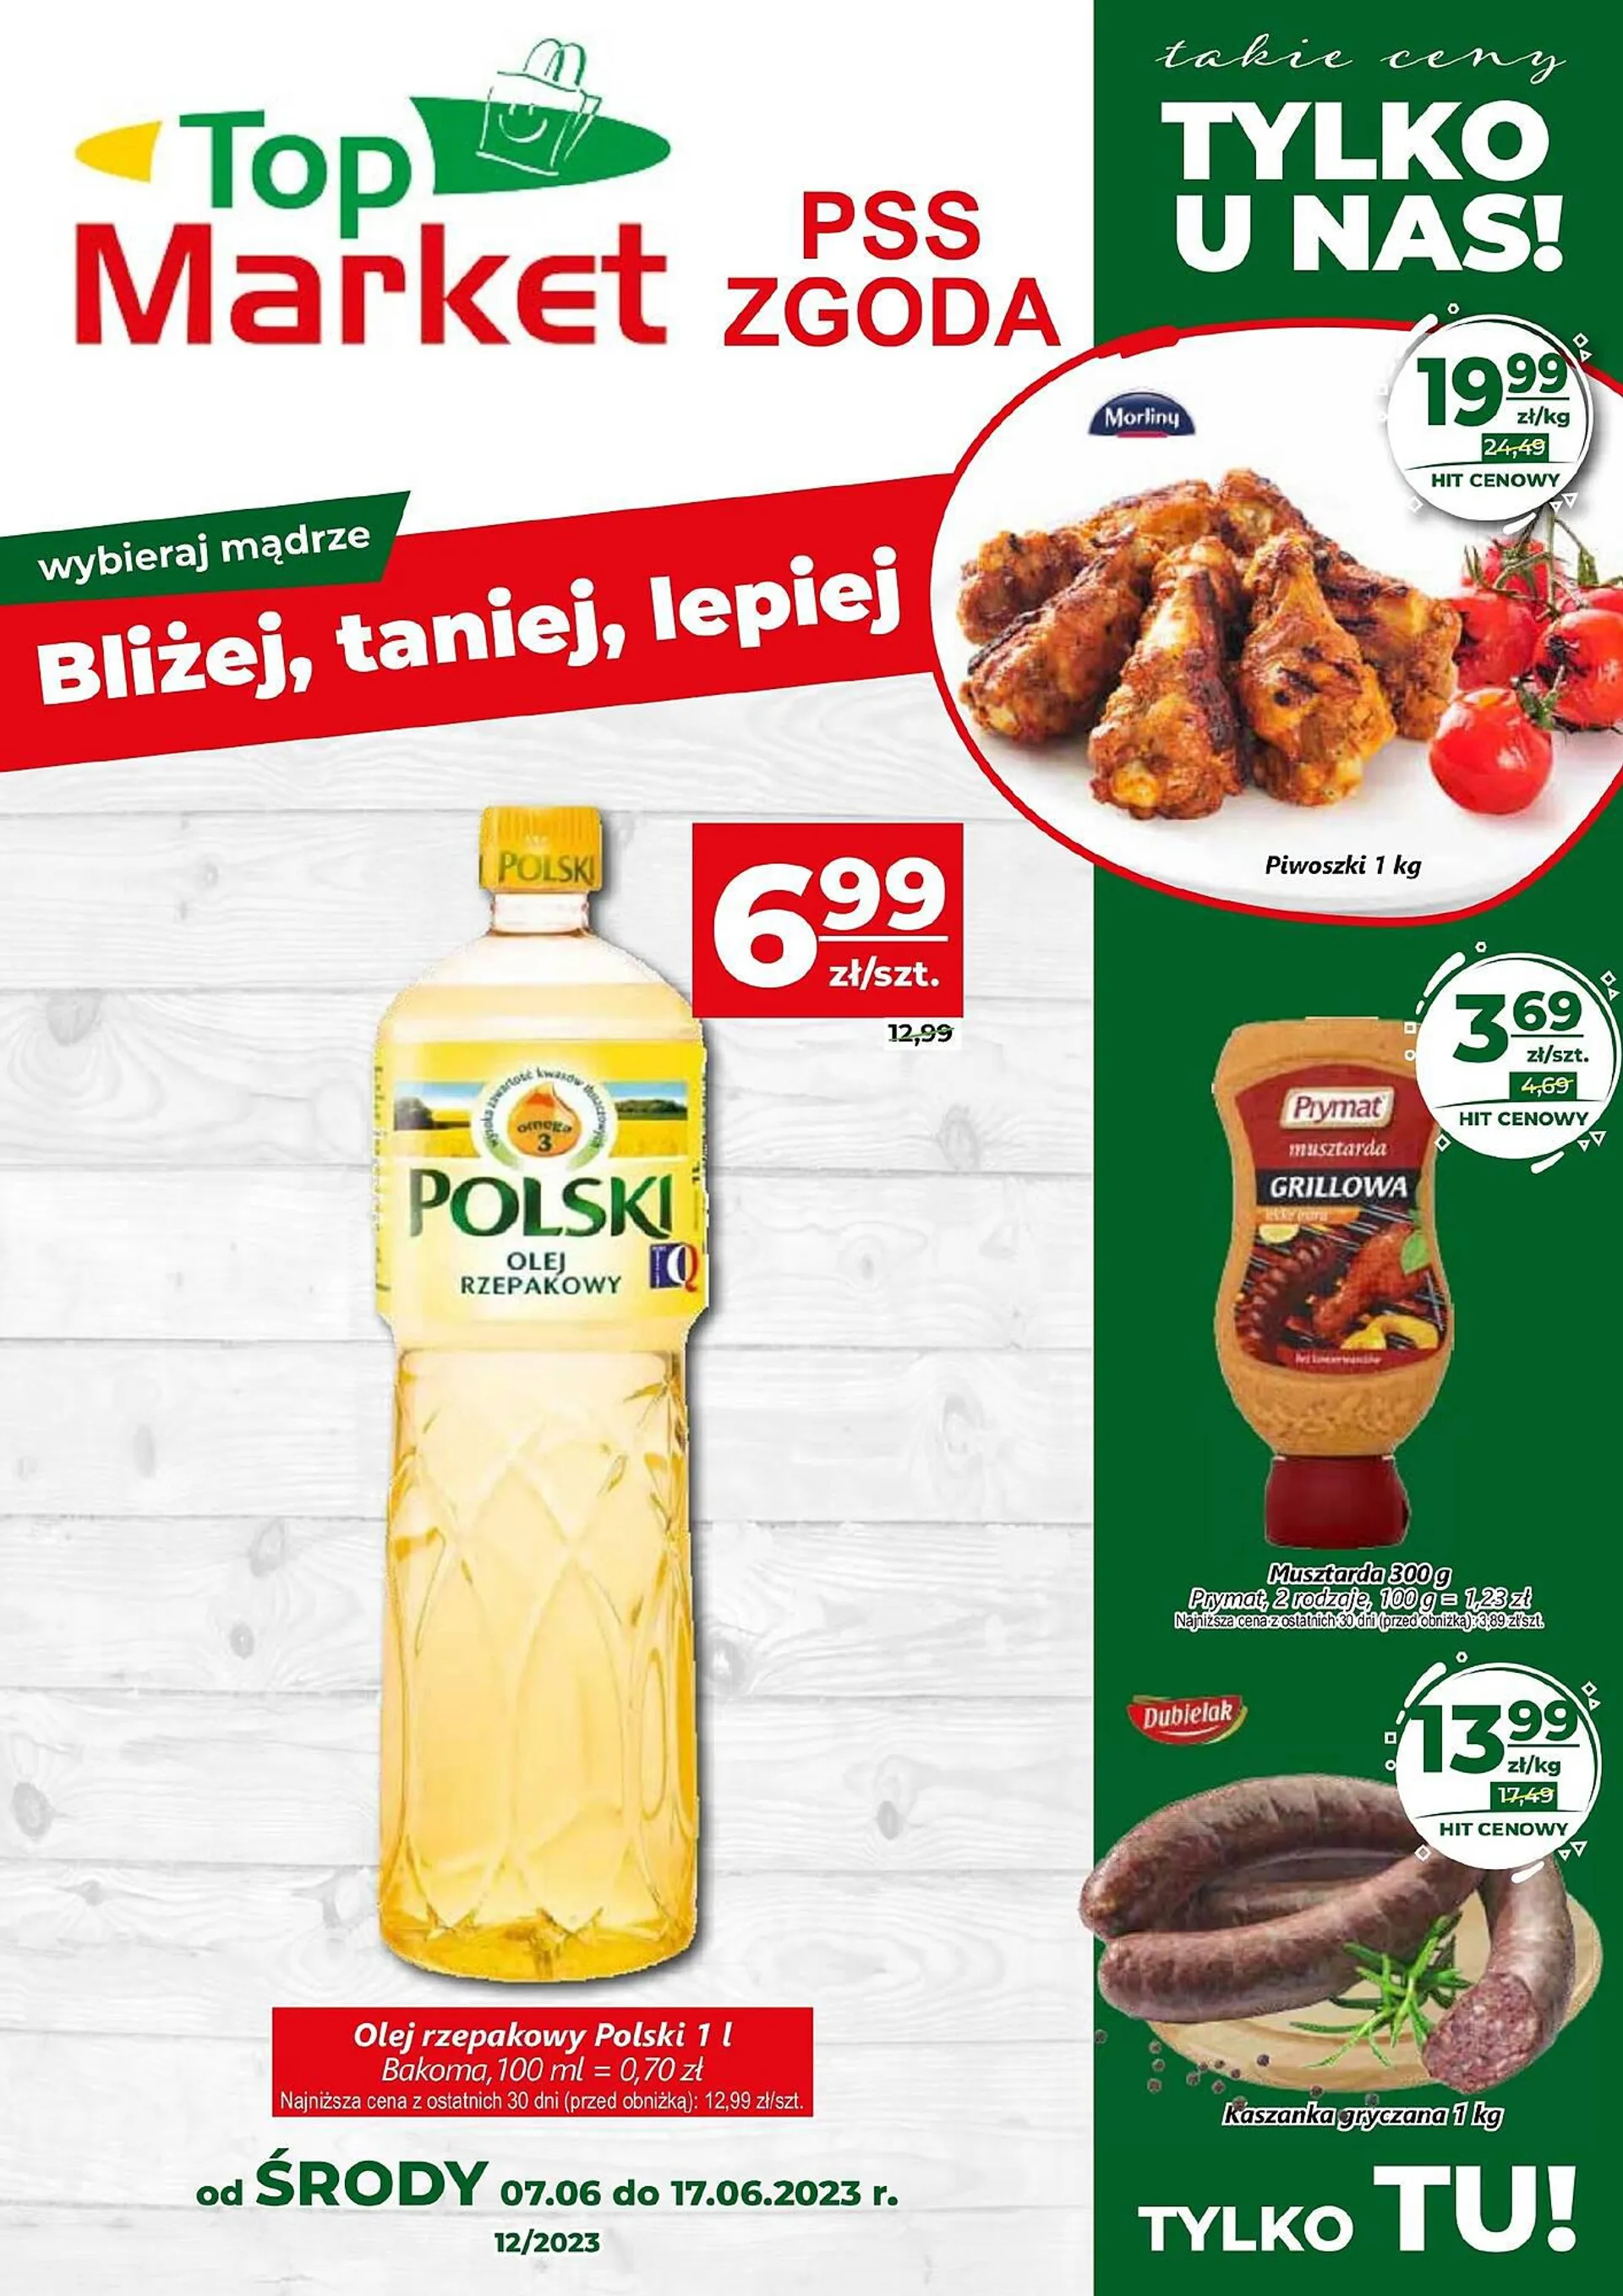 Top Market PSS Zgoda gazetka - 1